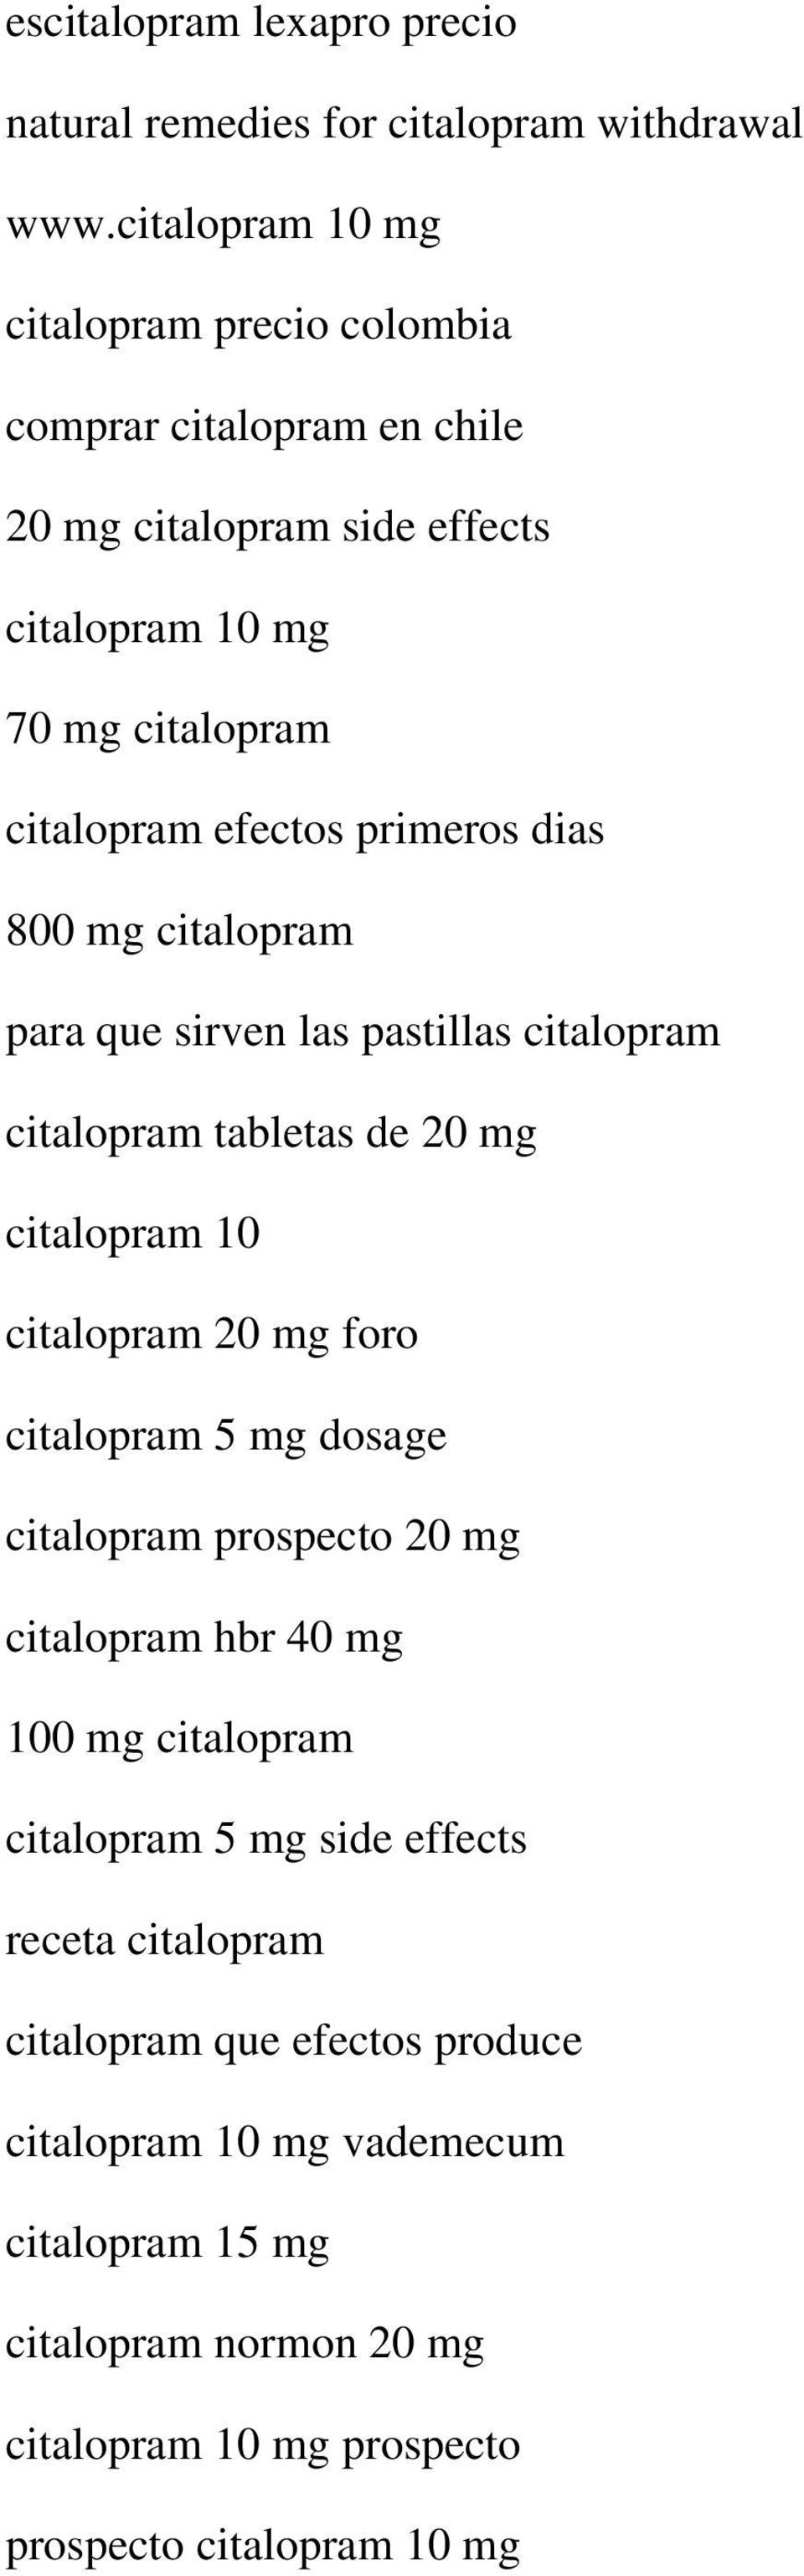 dias 800 mg citalopram para que sirven las pastillas citalopram citalopram tabletas de 20 mg citalopram 10 citalopram 20 mg foro citalopram 5 mg dosage citalopram